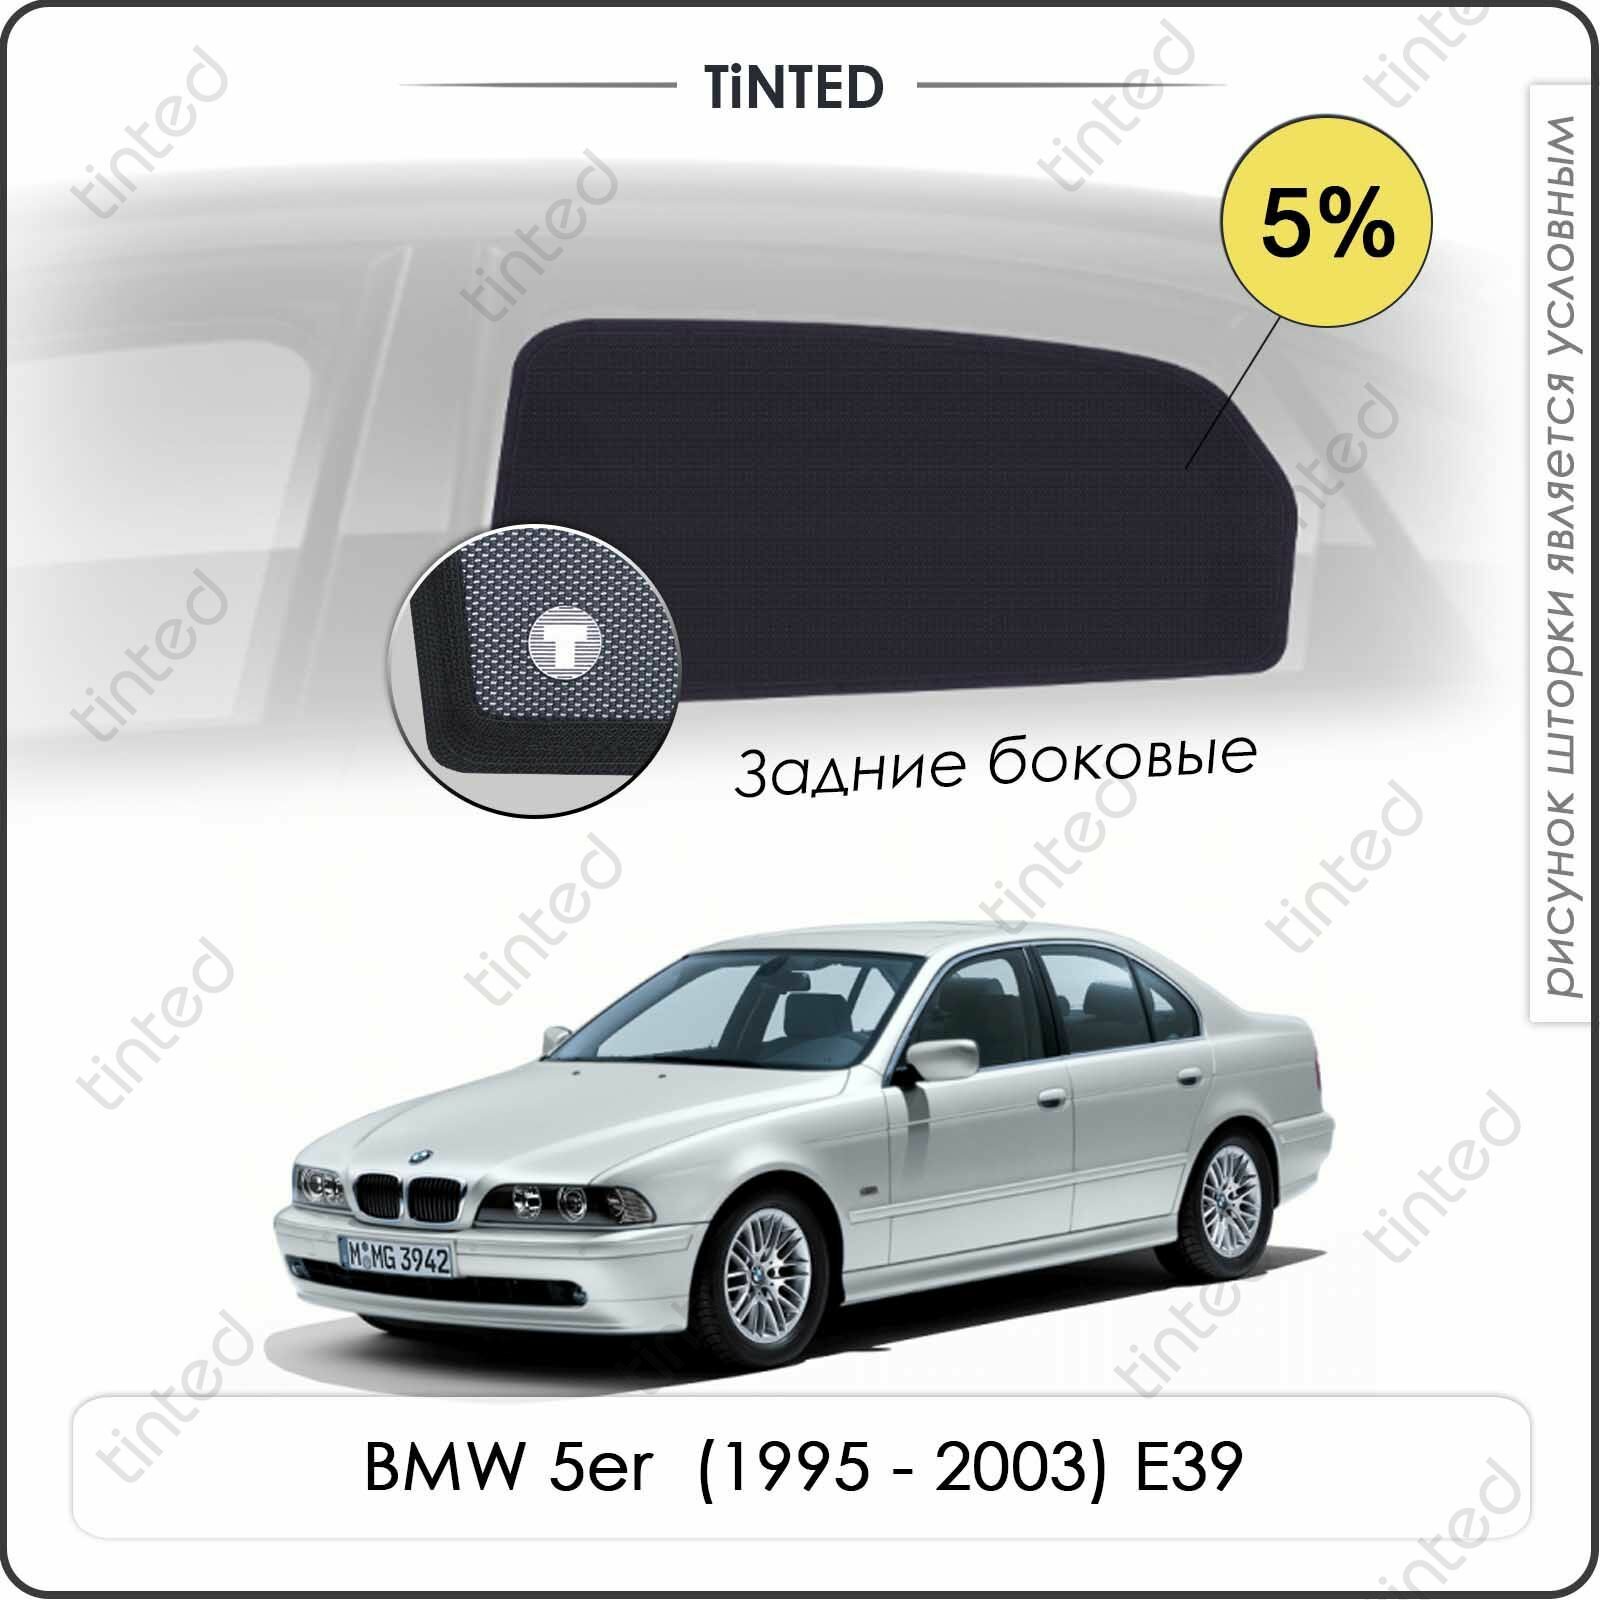 Шторки на автомобиль солнцезащитные BMW 5er 4 Седан 4дв. (1995 - 2003) E39 на задние двери 5% сетки от солнца в машину БМВ 5 серии е39 Каркасные автошторки Premium